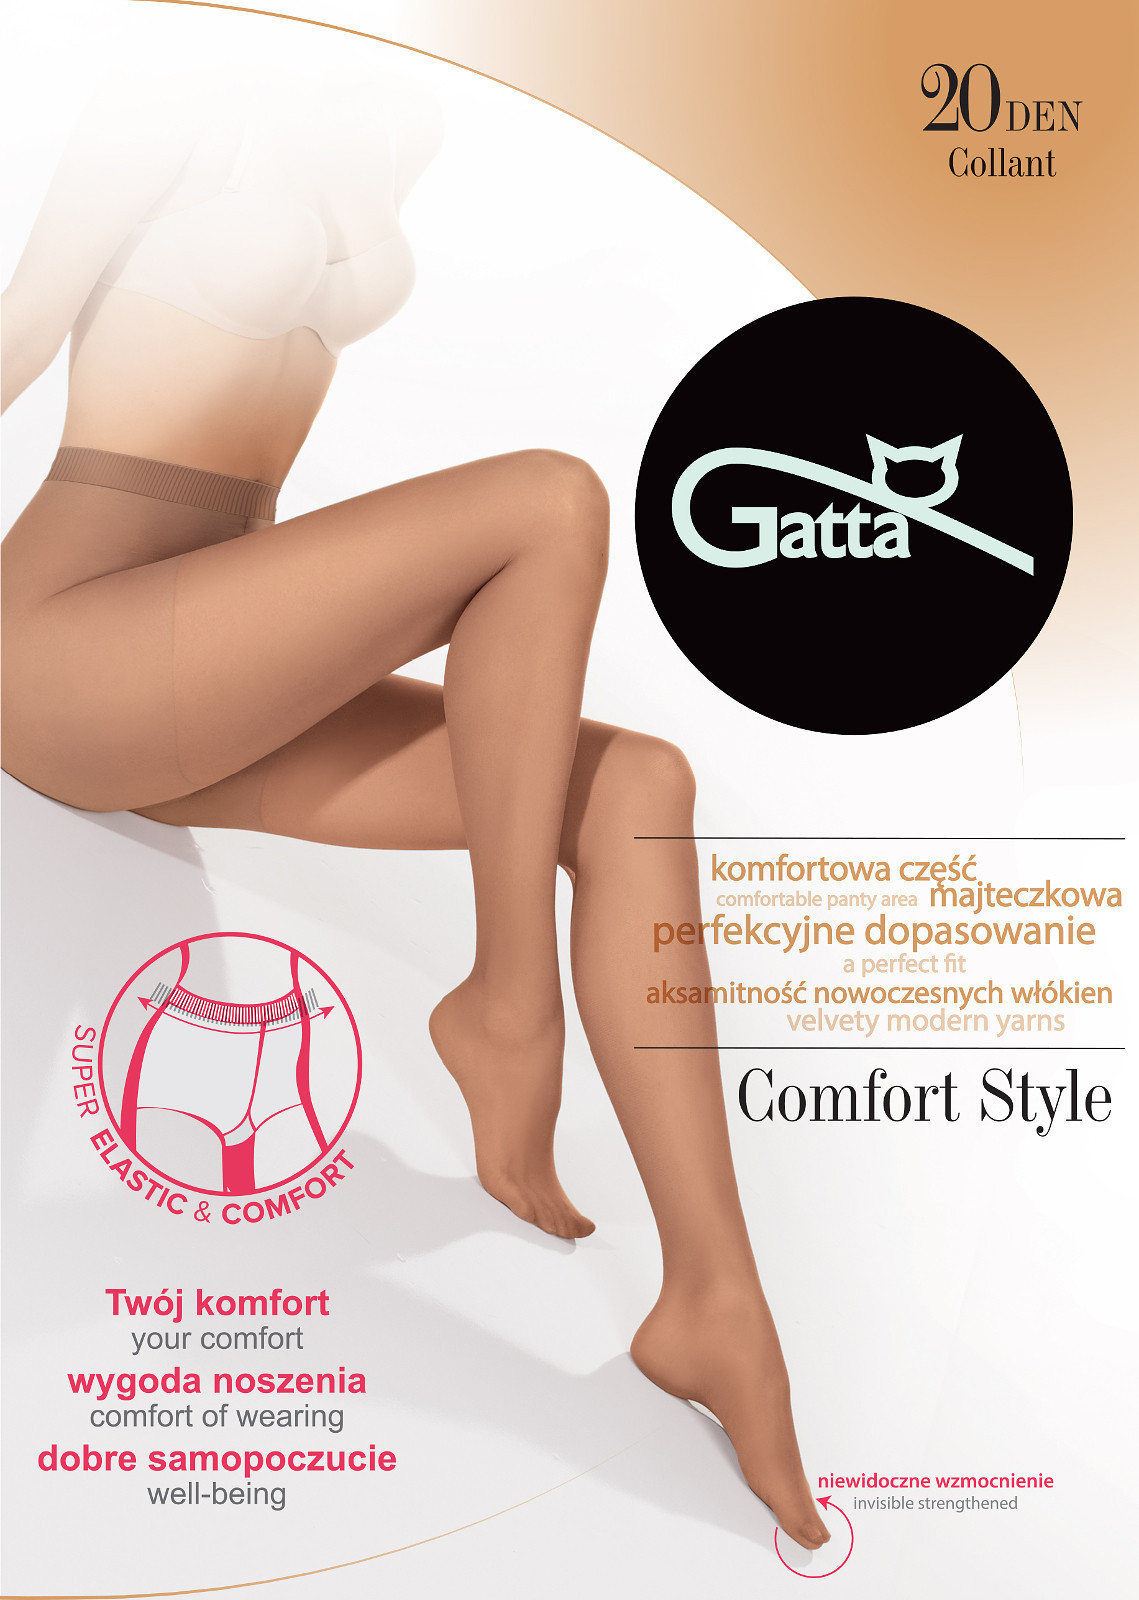 Dámské punčochové kalhoty Comfort Style 20 den -GATTA 2-S daino